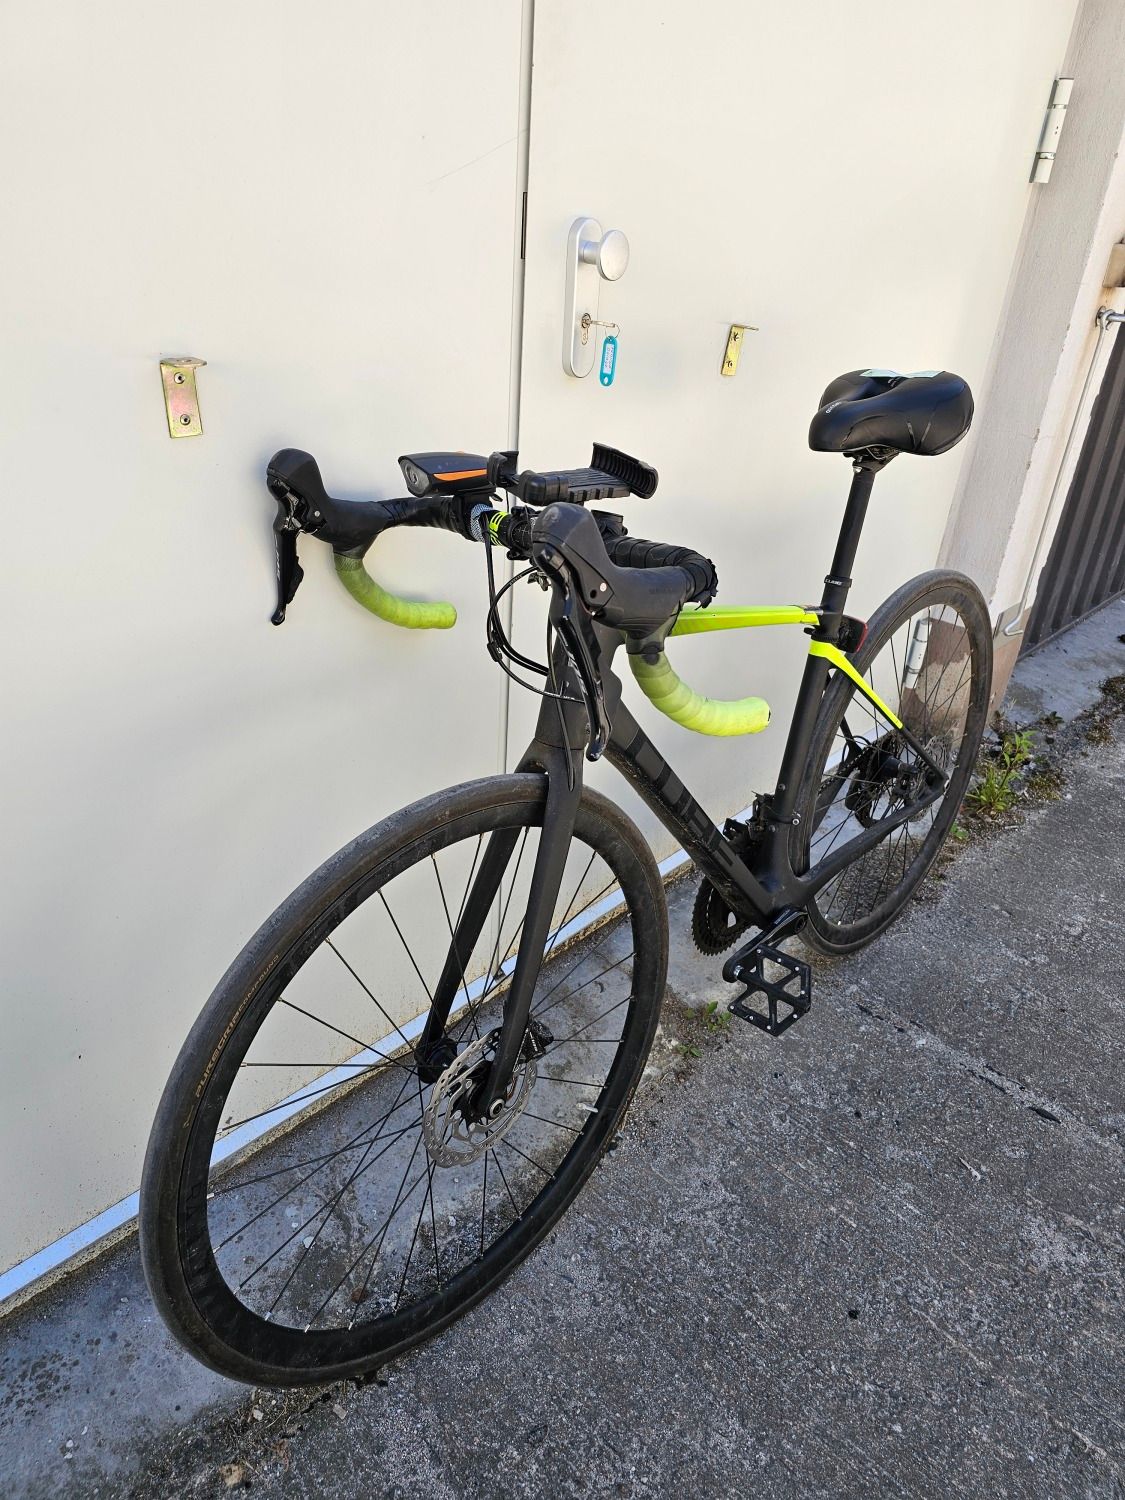 Gelb-schwarzes Rennrad